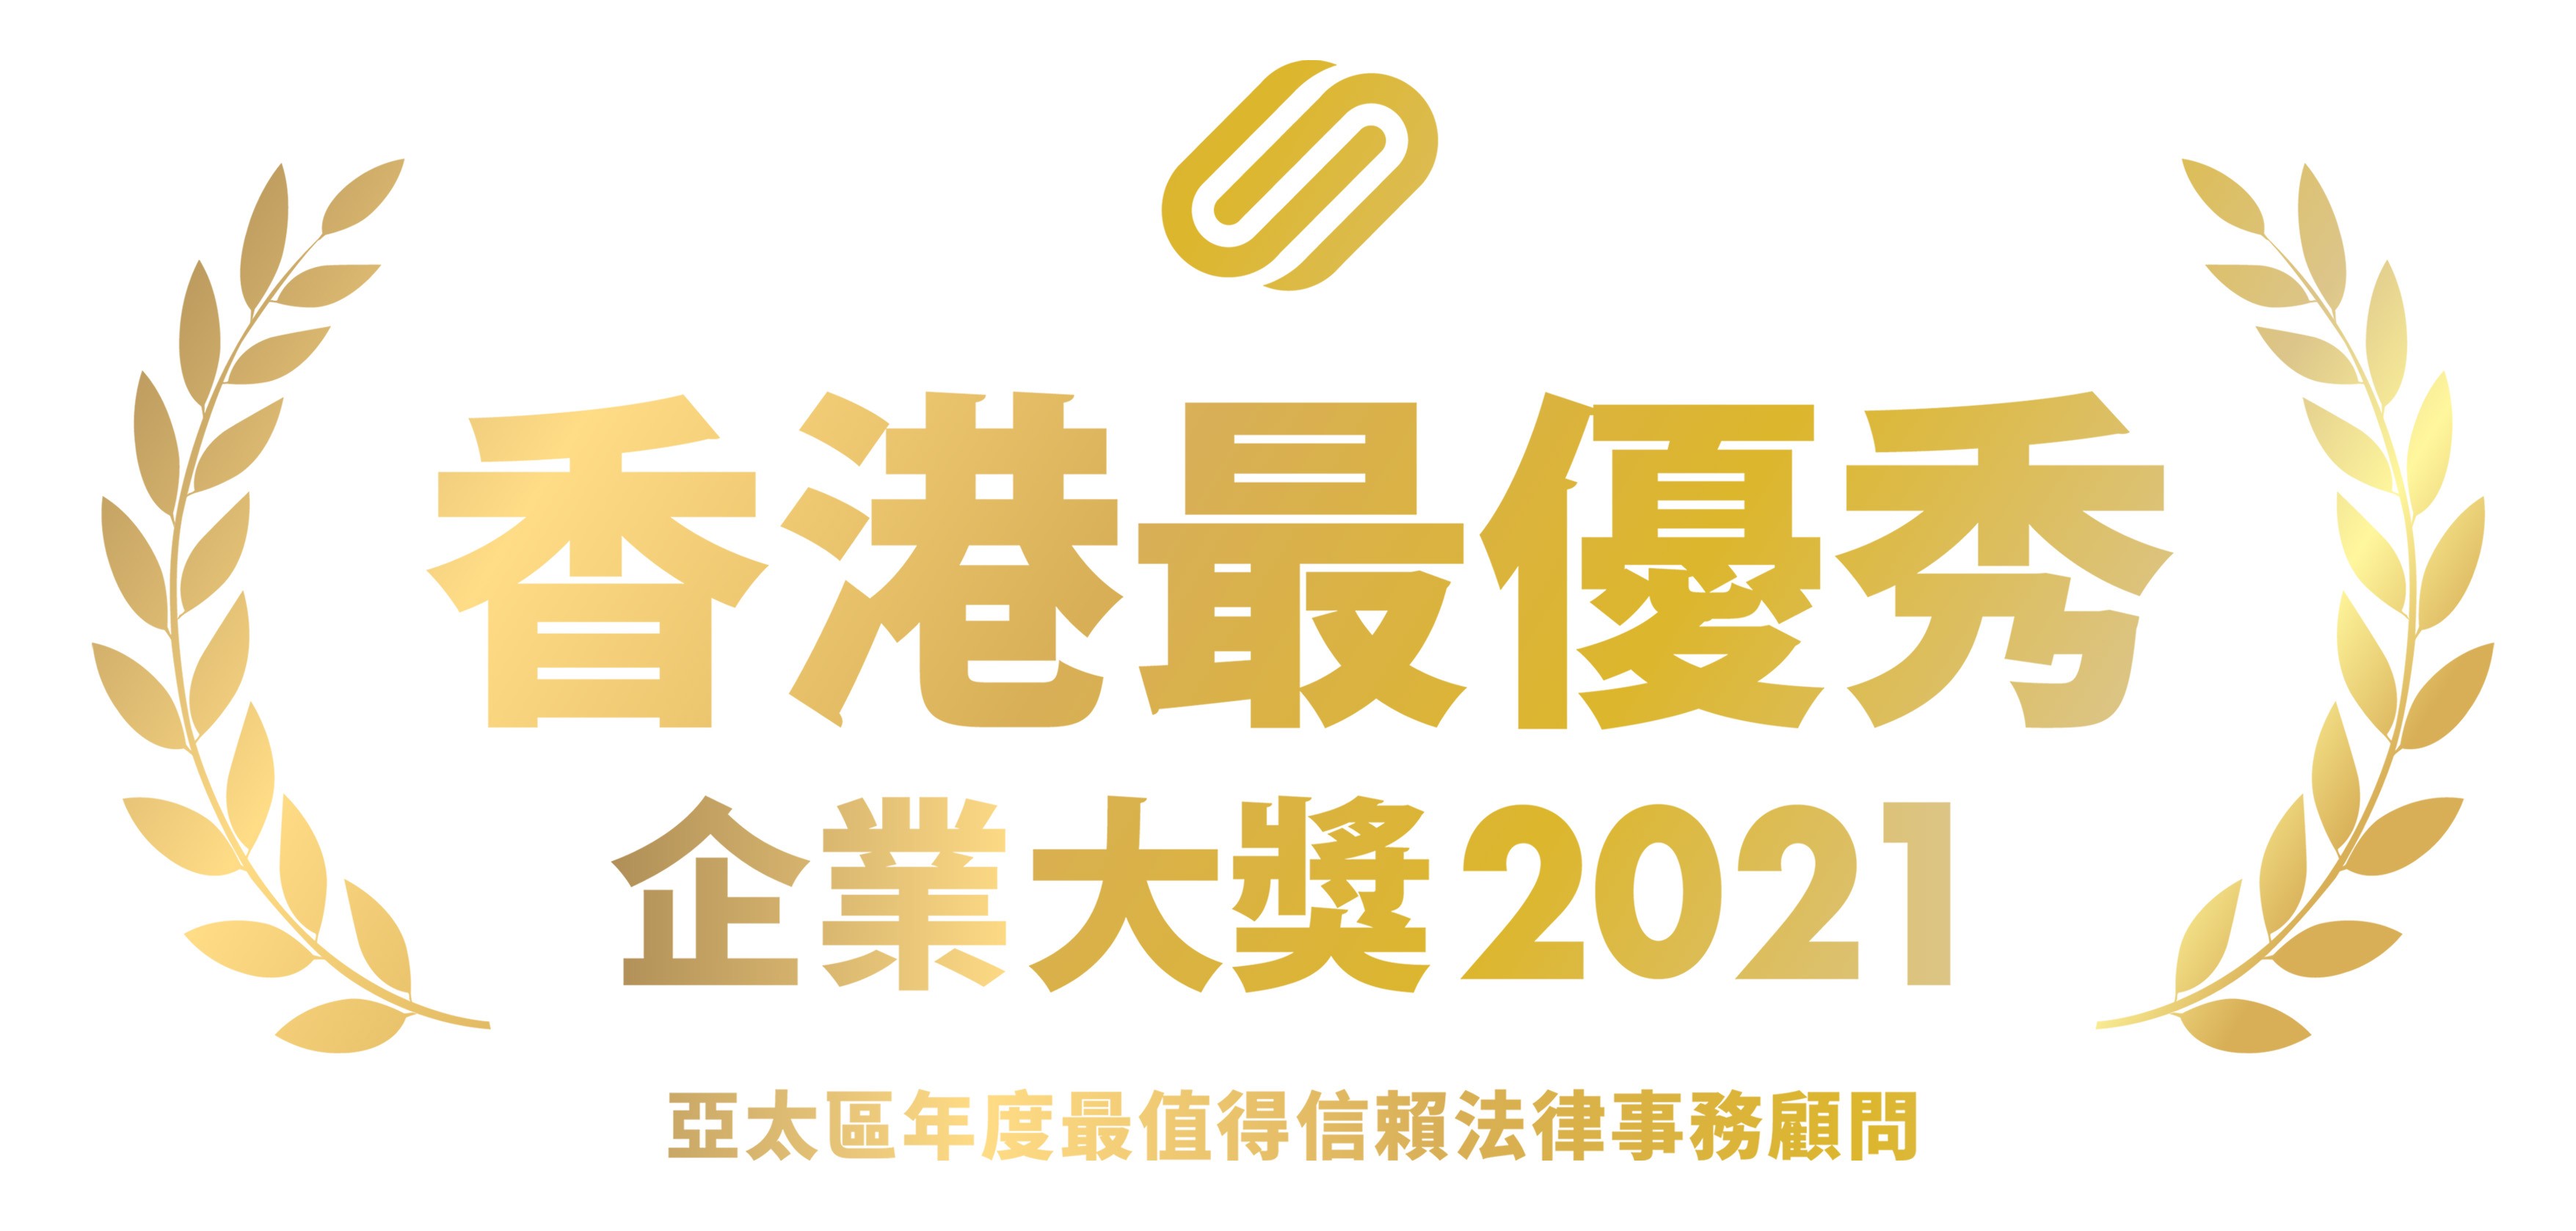 CORPHUB 《香港最优秀企业大奖2021》 亚太区年度最值得信赖法律事务顾问